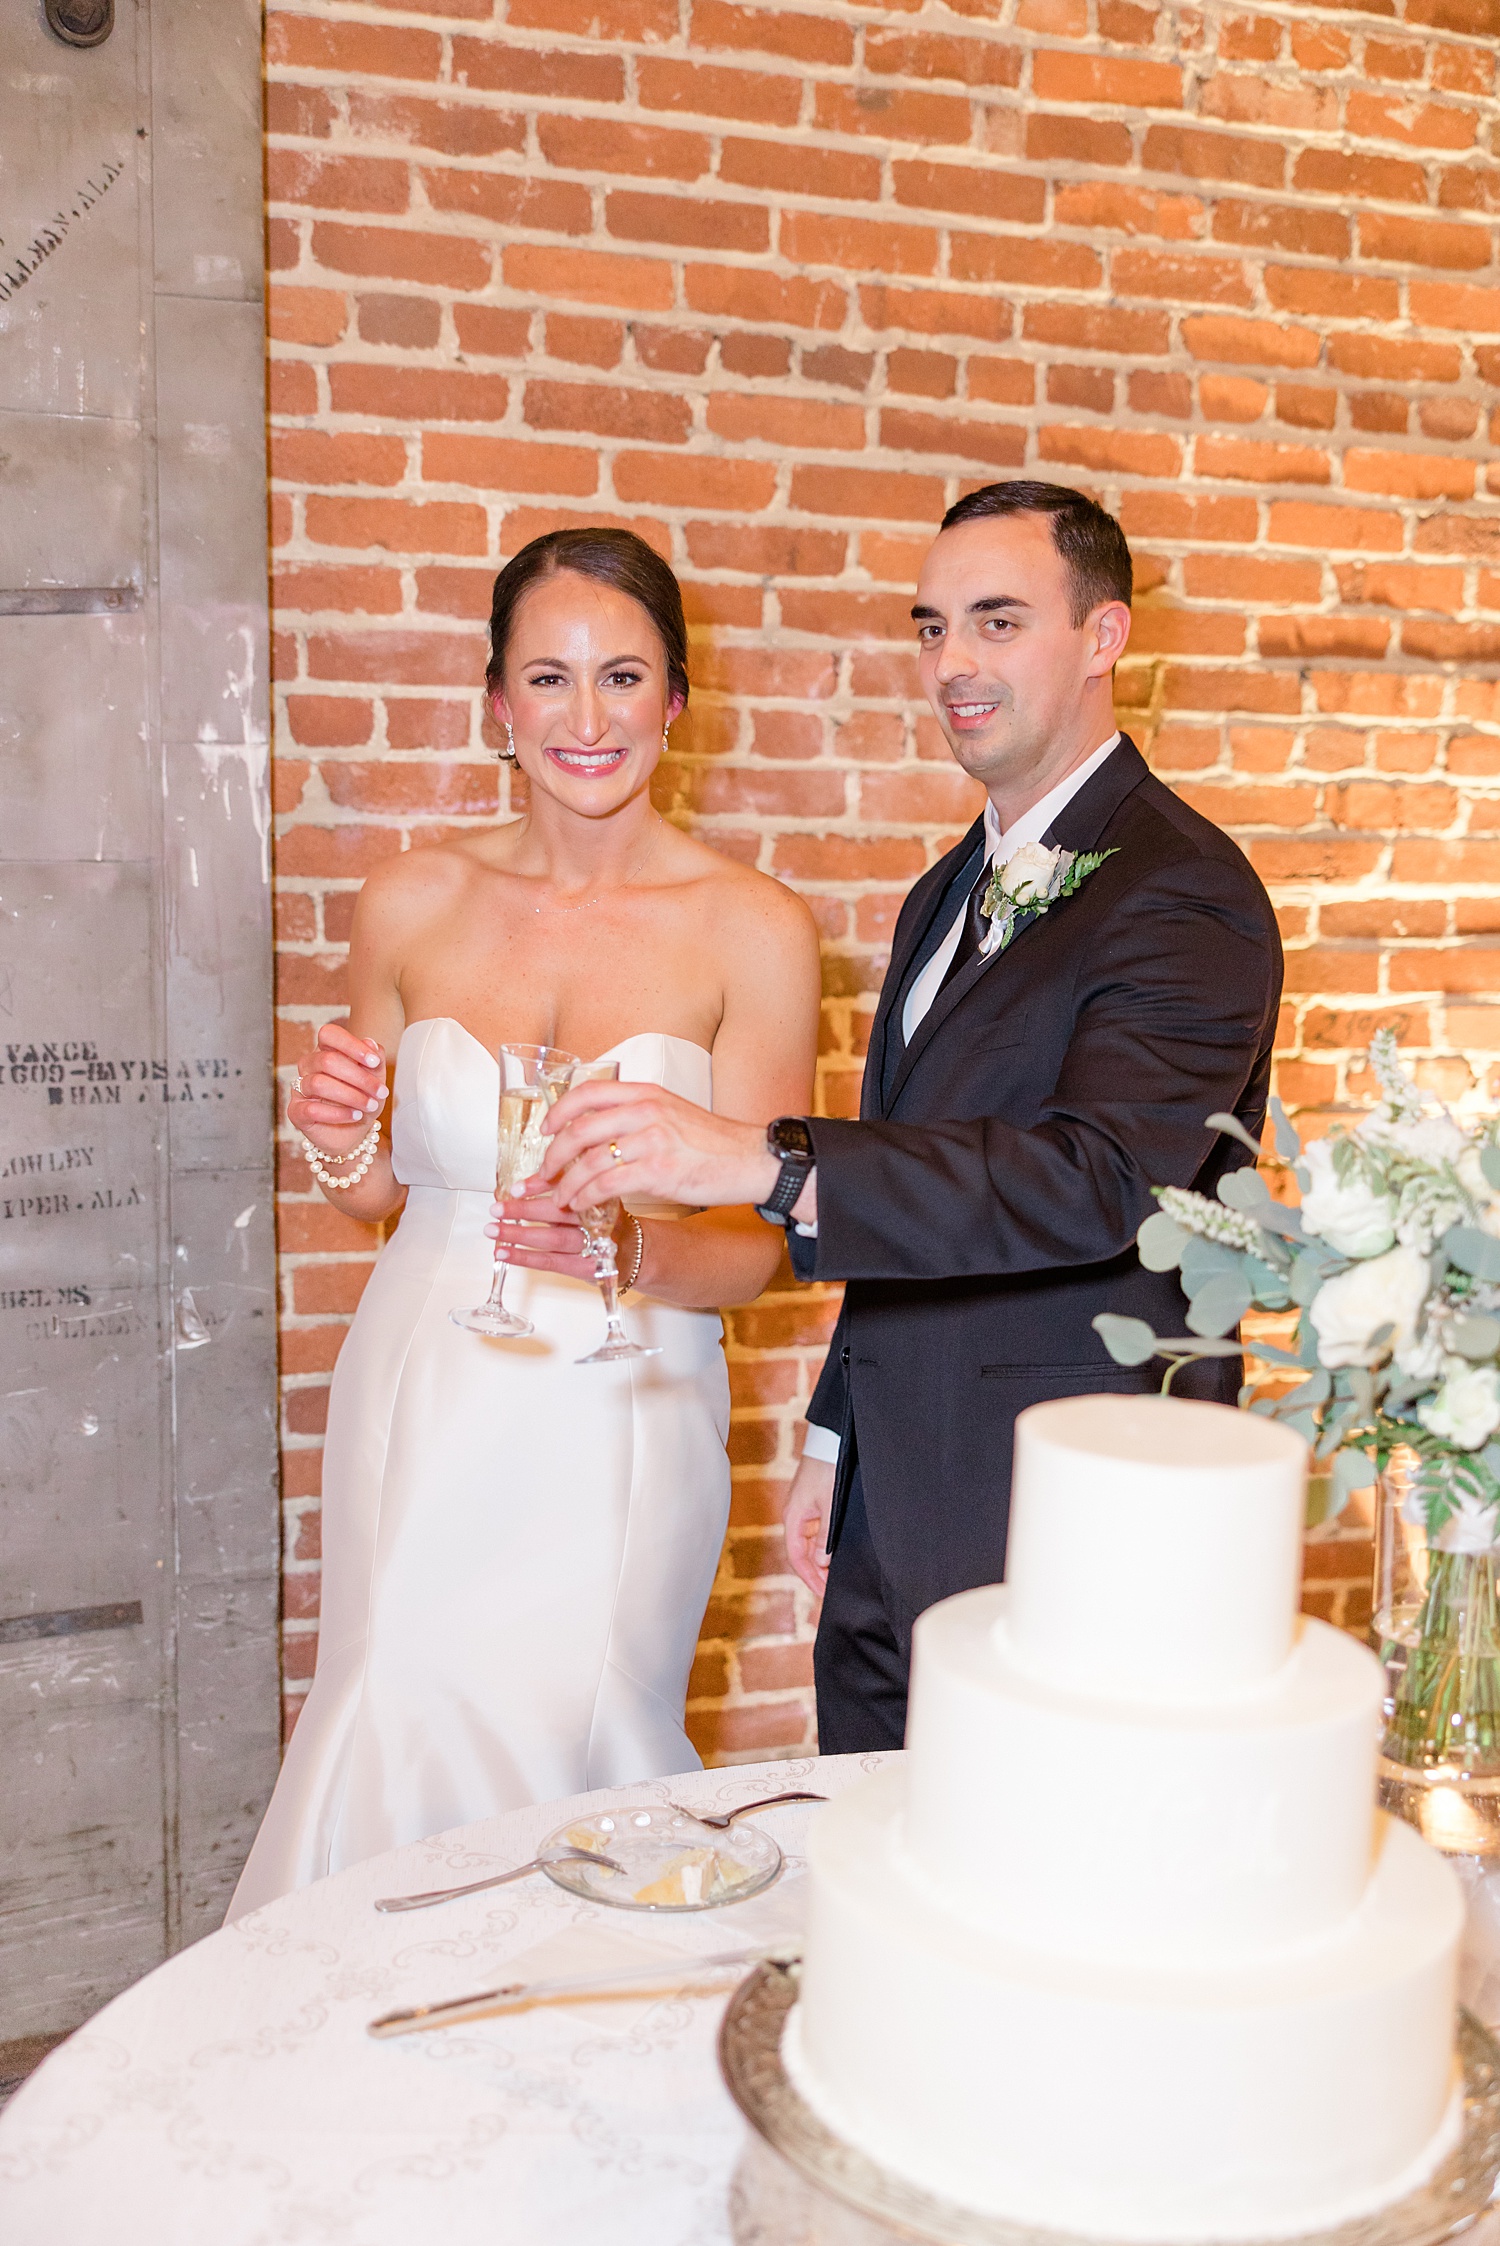 newlyweds toast during wedding reception